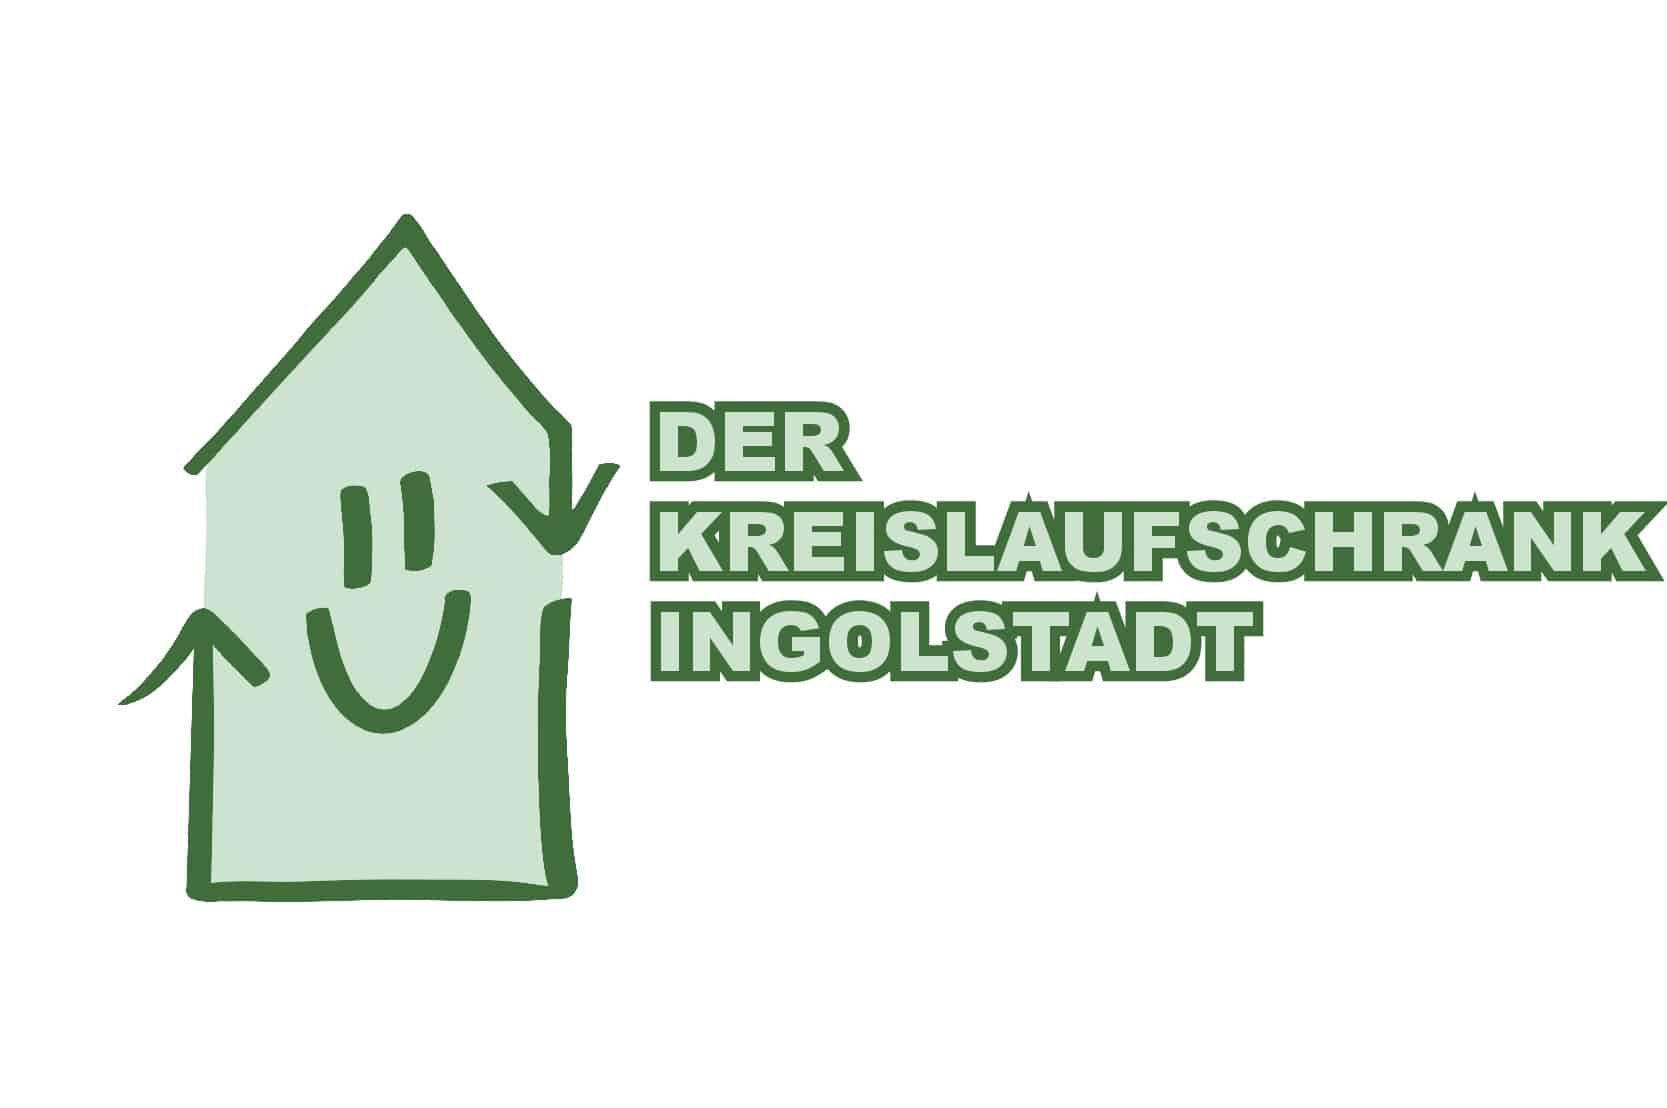 Logo Kreislaufschrank Ingolstadt mit Text